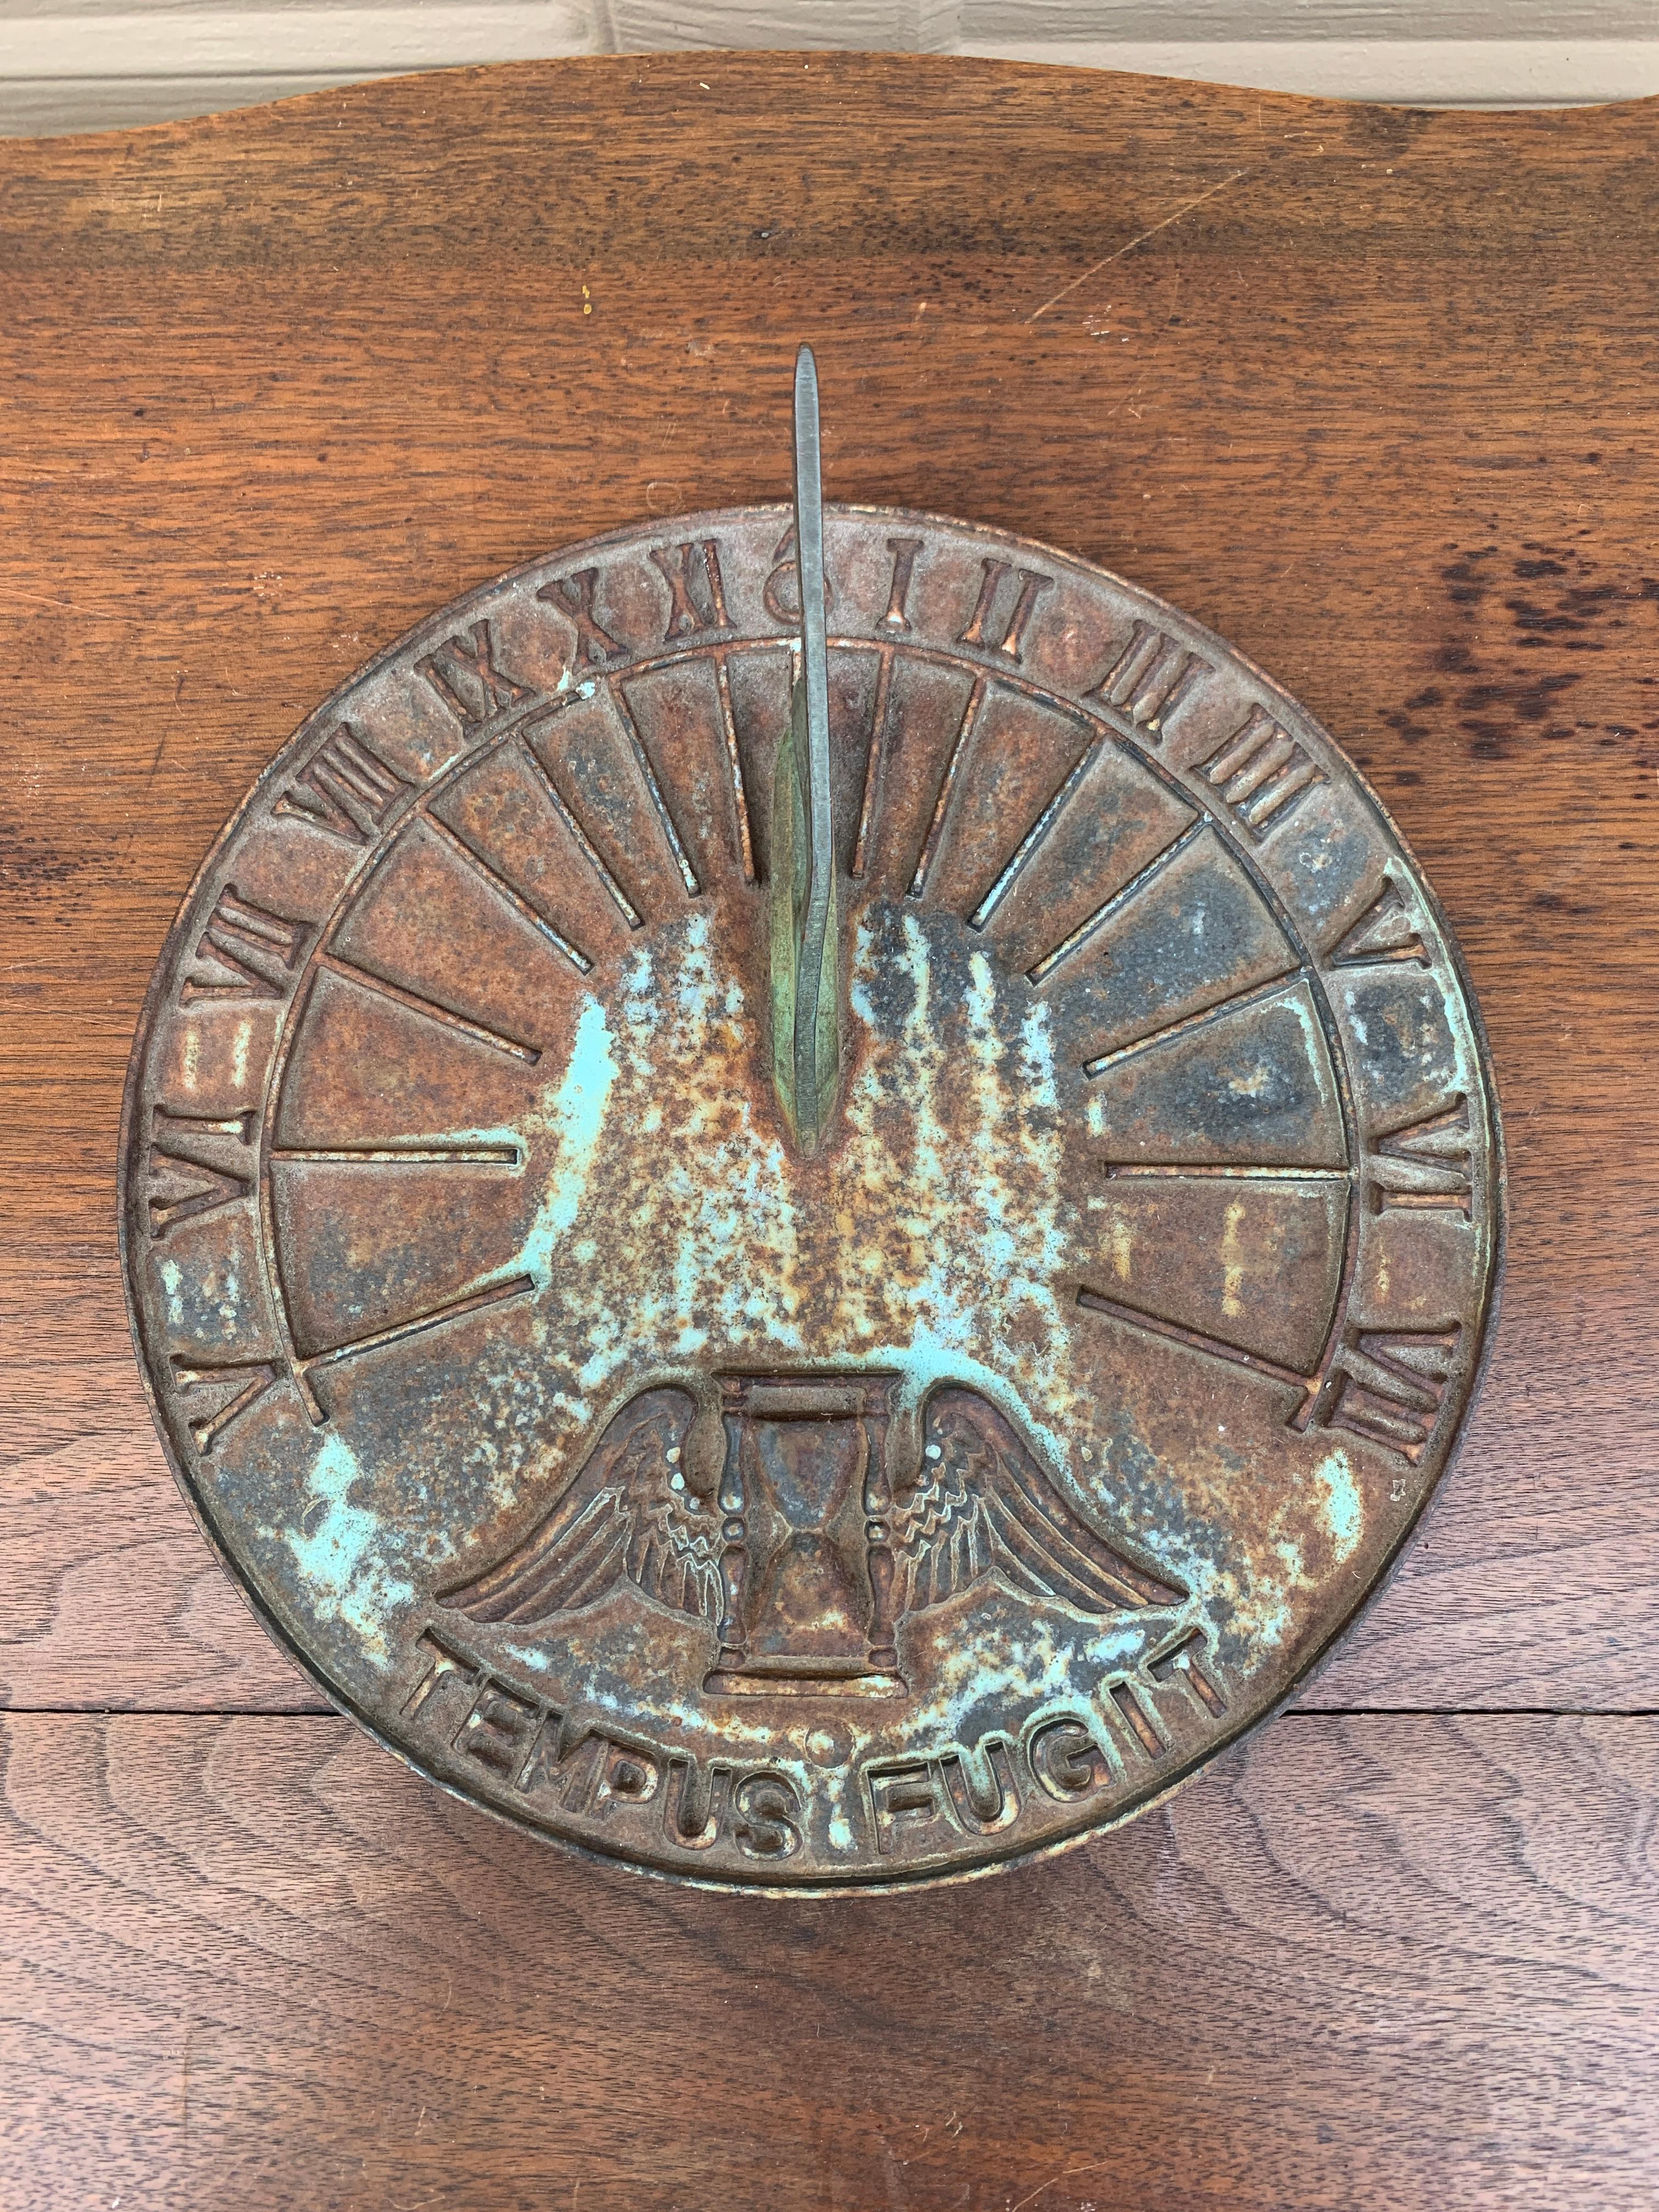 A stunning vintage iron garden sundial reading 